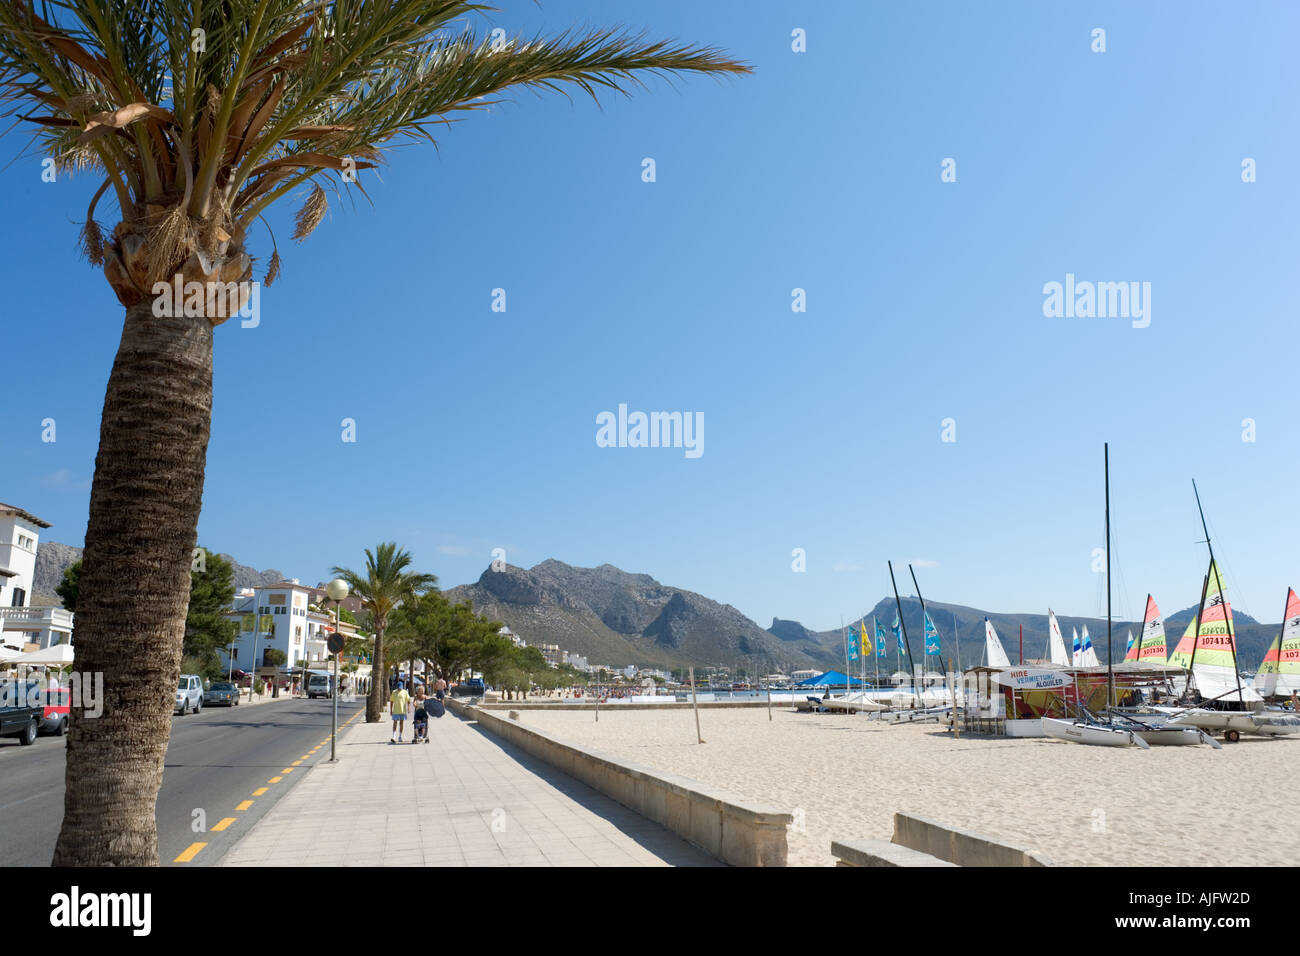 La principale plage et promenade du bord de mer à Puerto Pollensa, Majorque, la côte nord de l'Espagne Banque D'Images